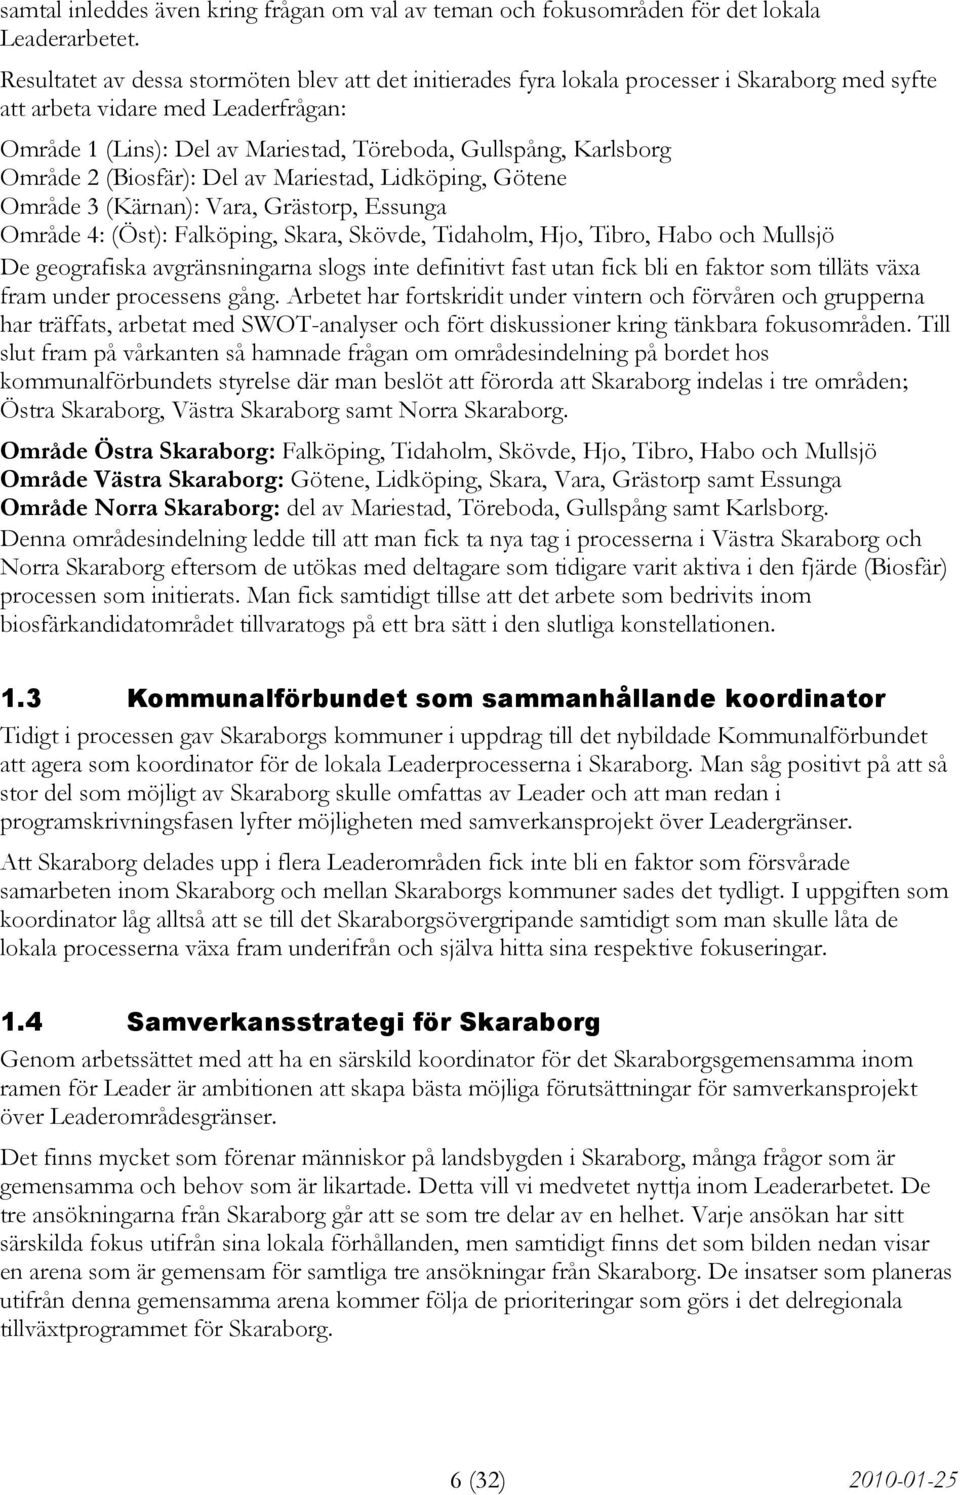 Karlsborg Område 2 (Biosfär): Del av Mariestad, Lidköping, Götene Område 3 (Kärnan): Vara, Grästorp, Essunga Område 4: (Öst): Falköping, Skara, Skövde, Tidaholm, Hjo, Tibro, Habo och Mullsjö De